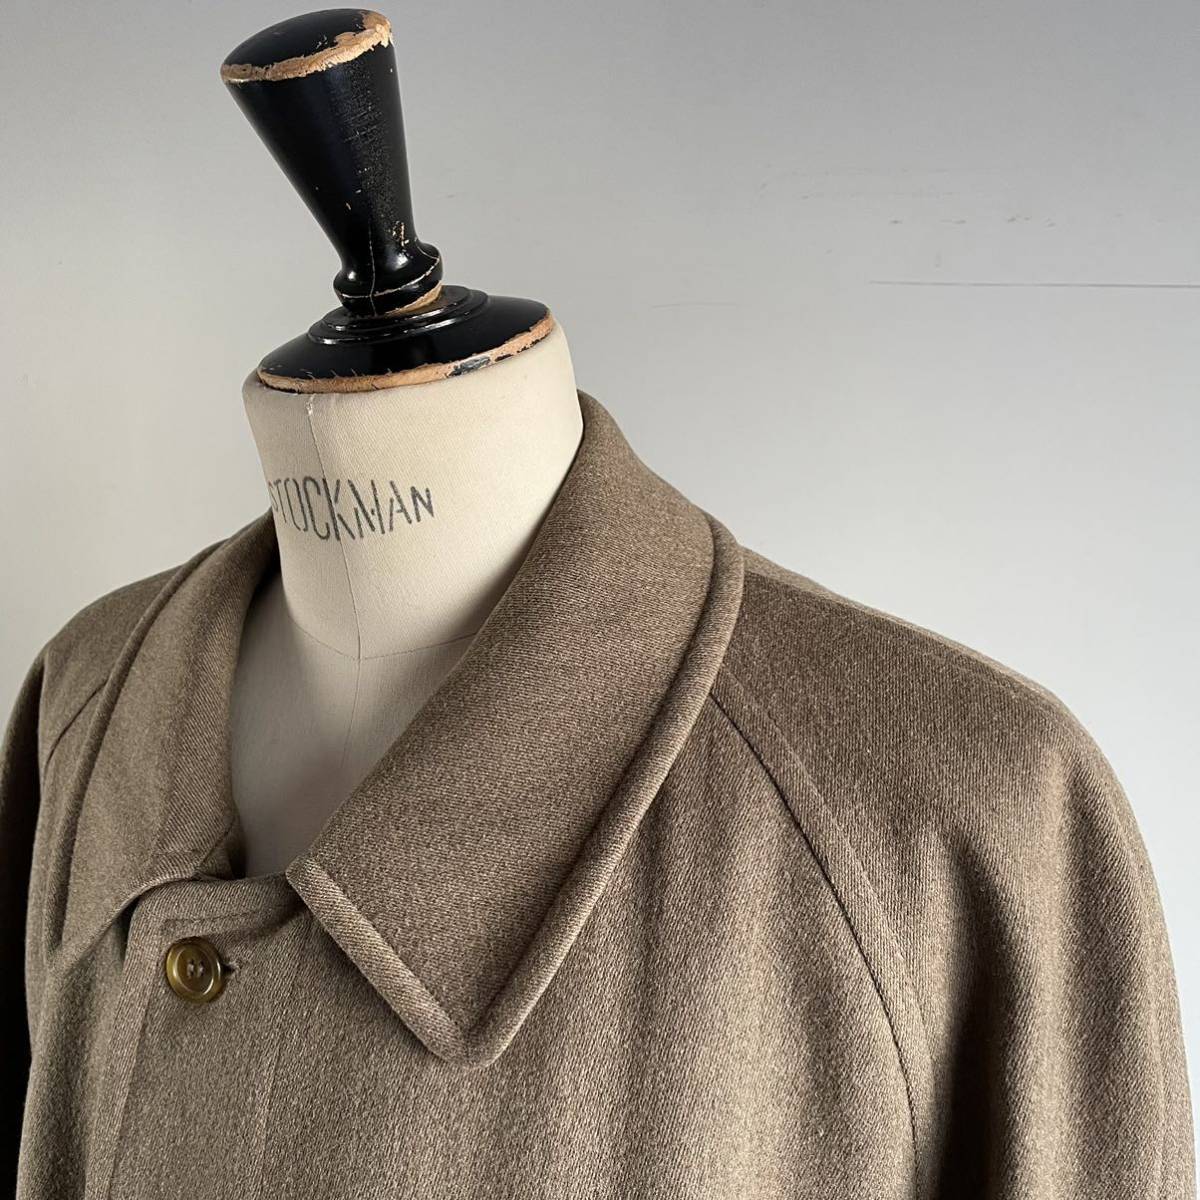 【一枚袖 以上】バーバリー コート ウールコート ベルテッドコート イングランド製 別注品 80s